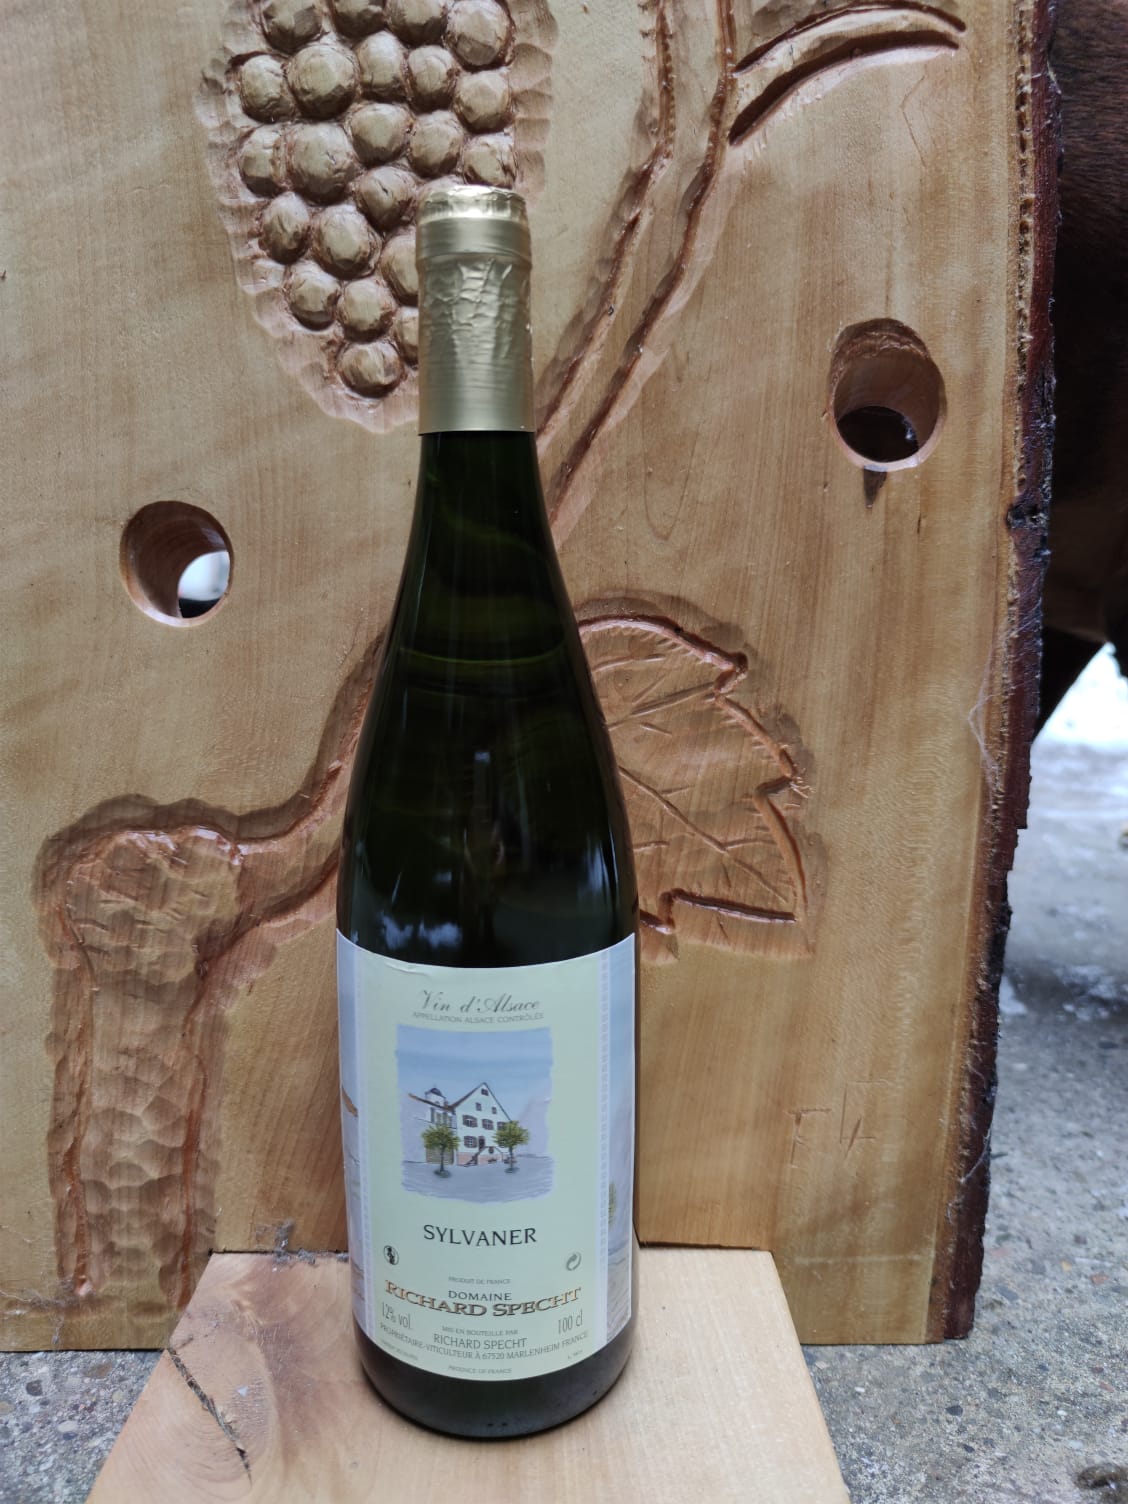 Sylvaner-Vins d'Alsace Specht